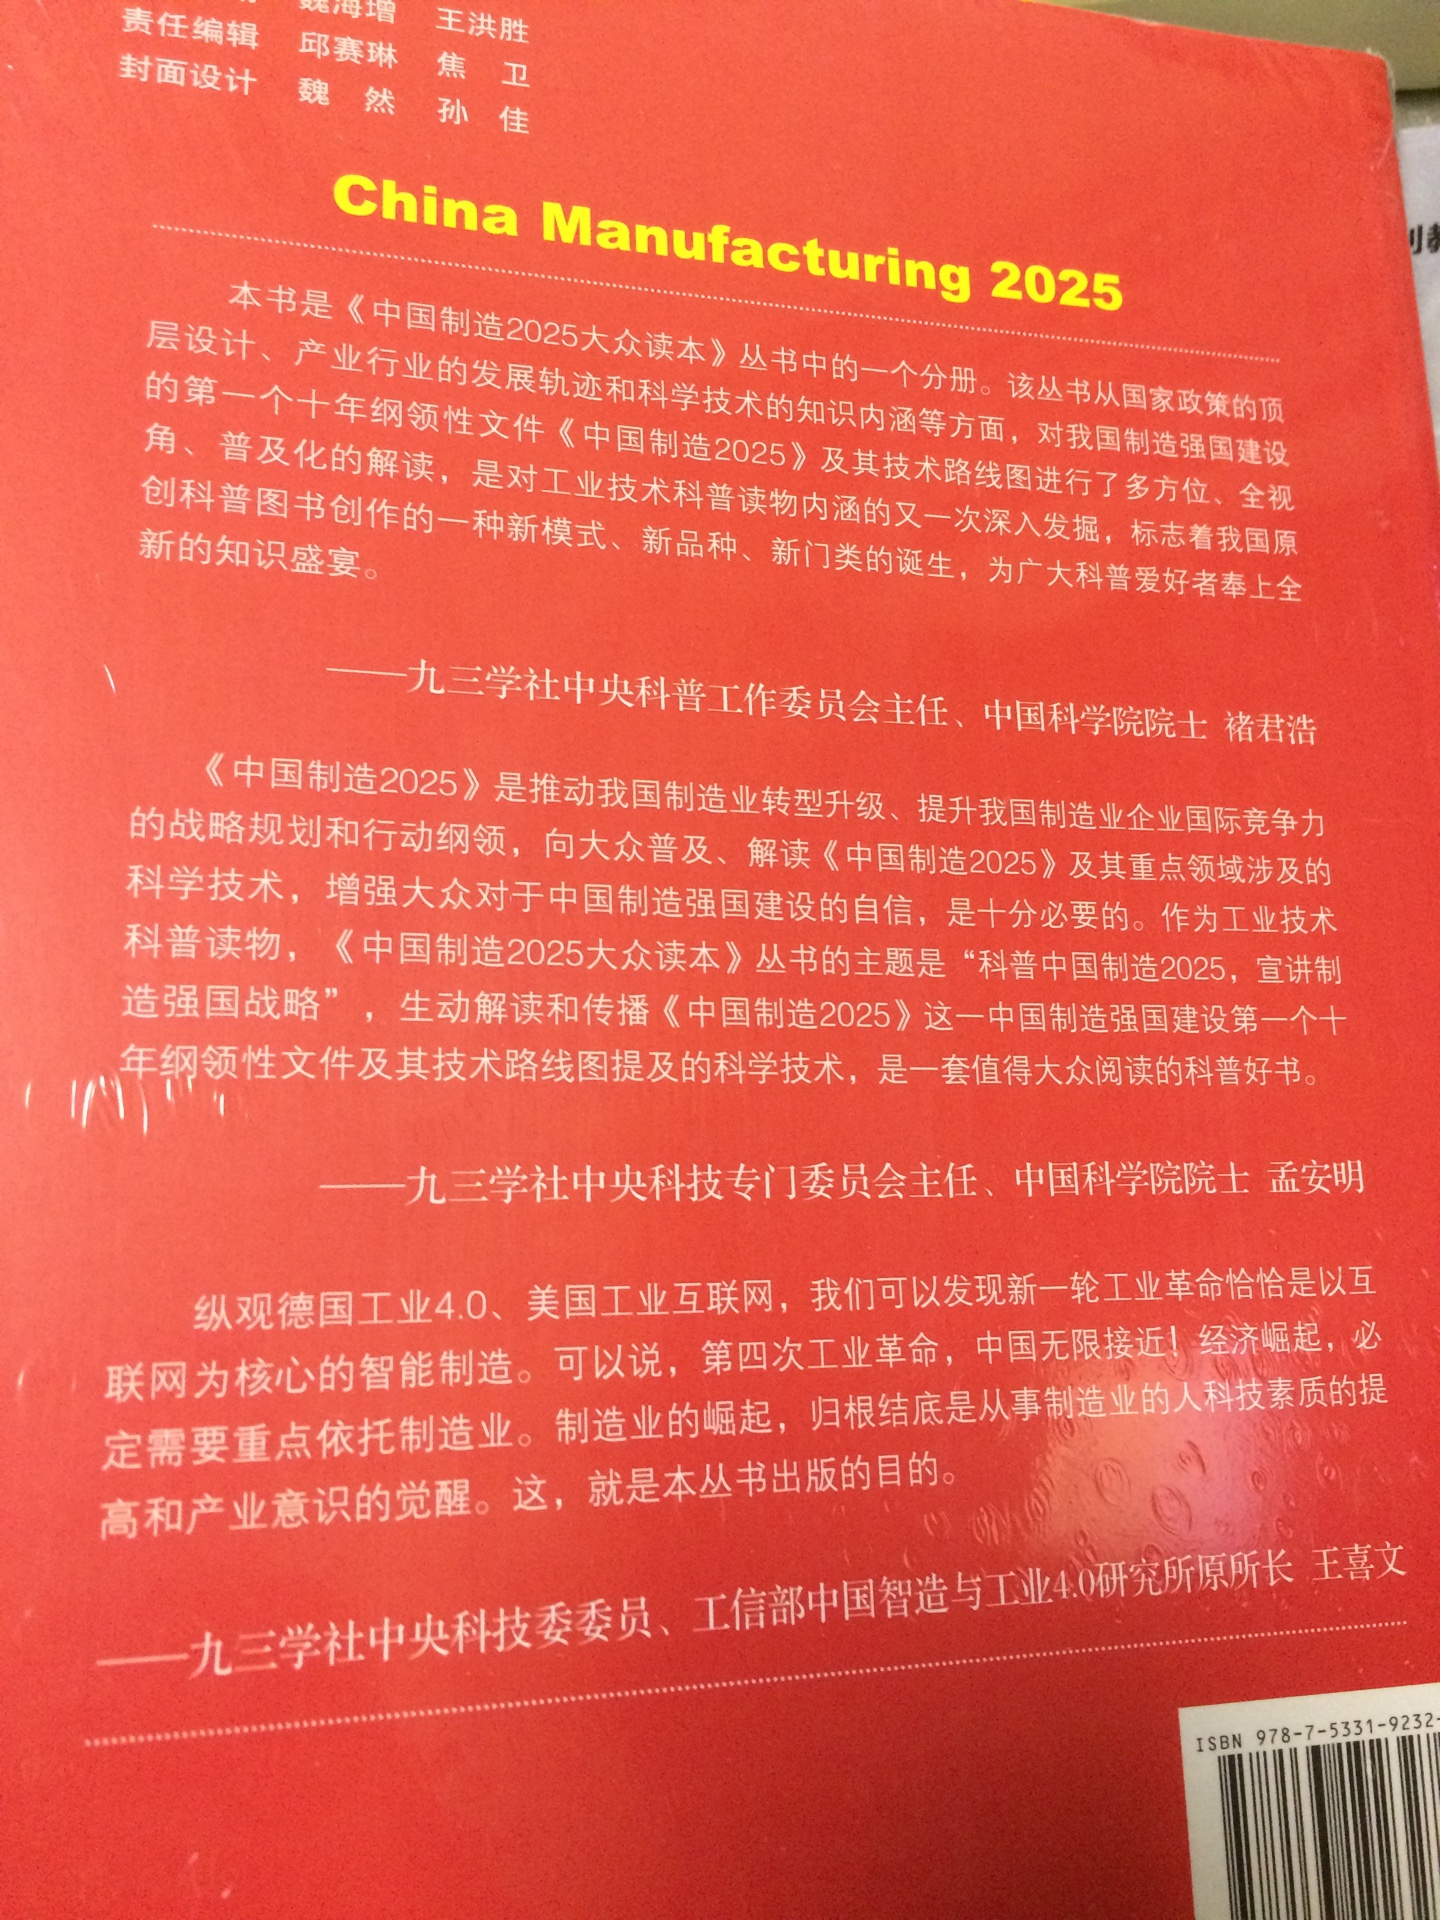 有塑封16开，中国制造2025读本，内容丰富详尽，值得推荐。